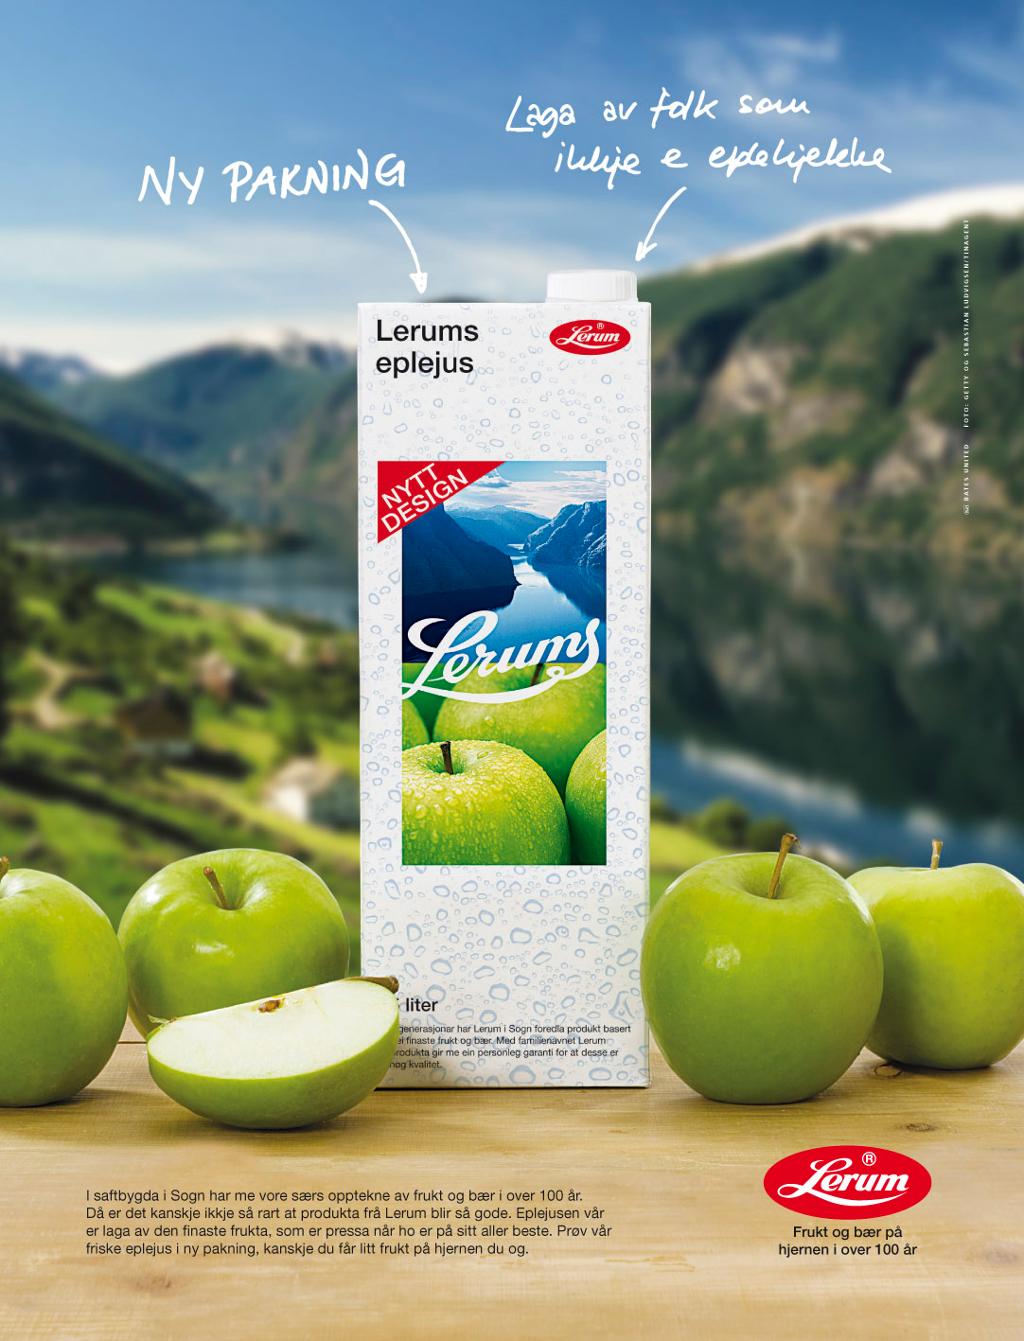 Reklameannonse for Lerum eplemost. Plakat.